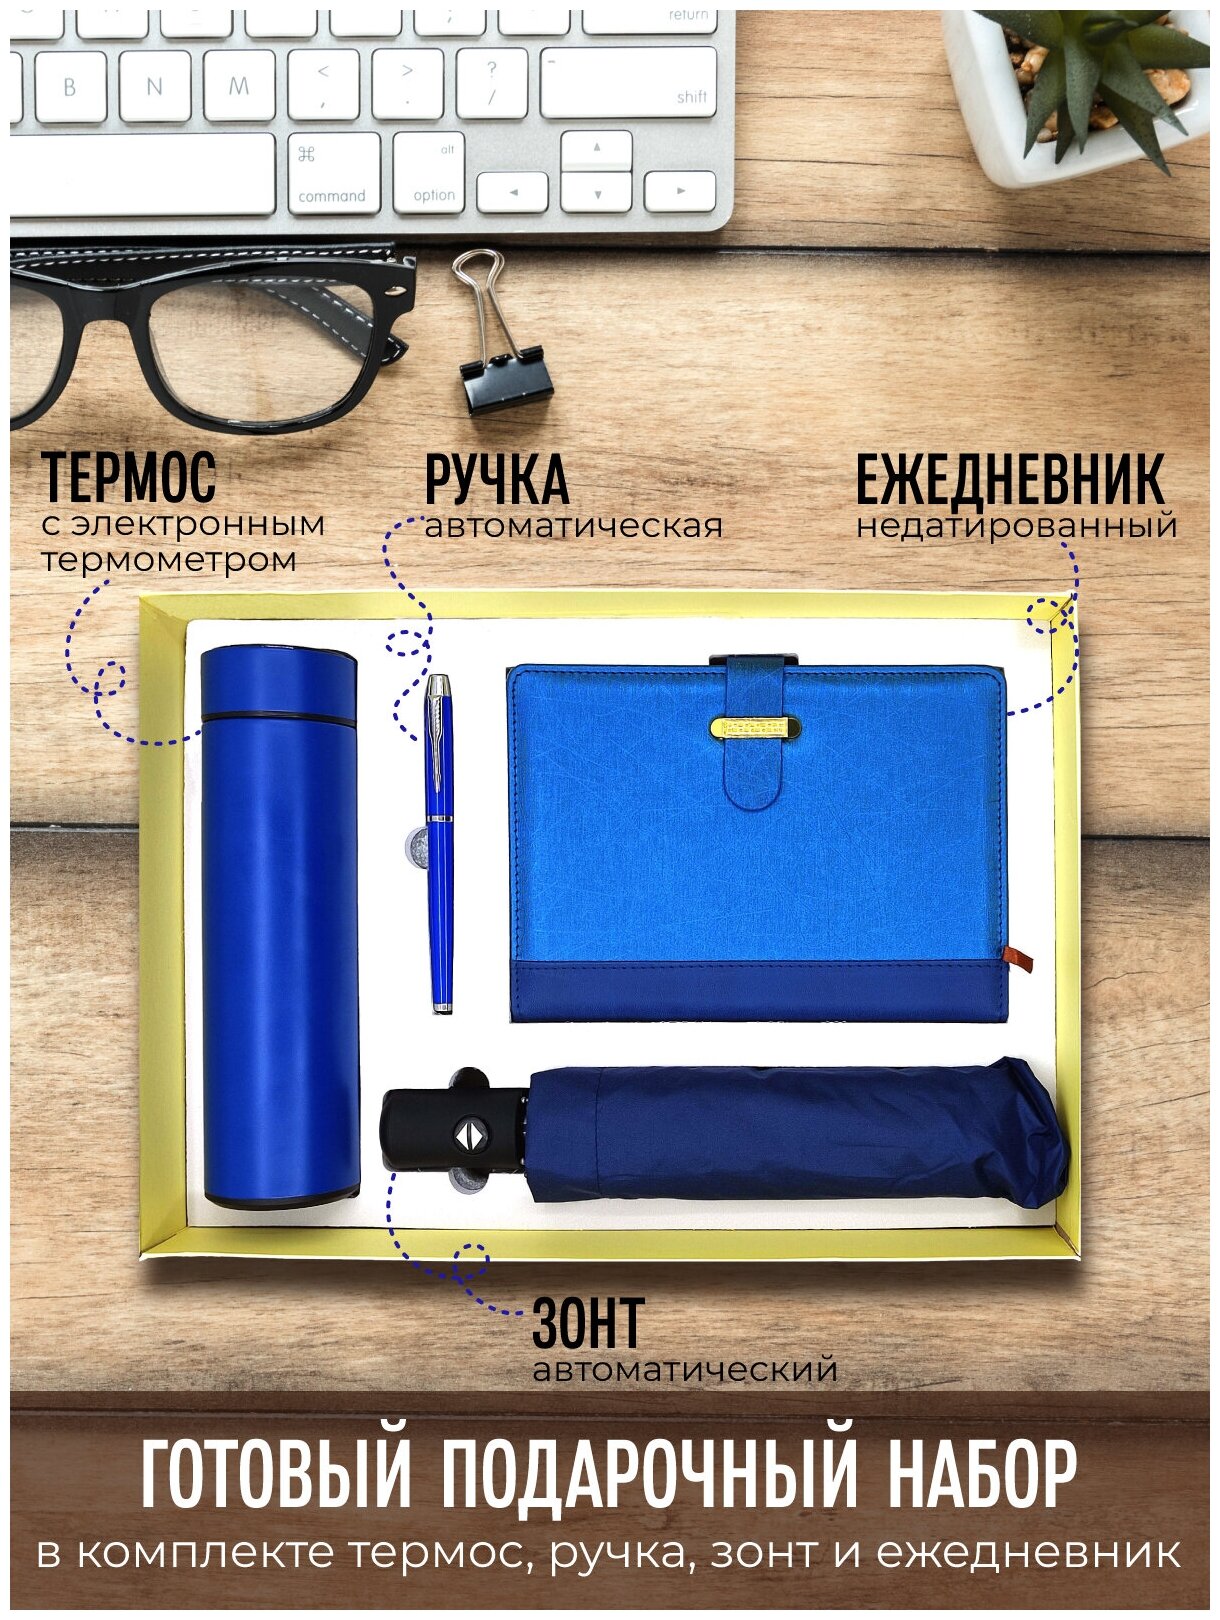 Подарочный набор термос с электронным термометром + автоматический зонт + ежедневник + ручка / цвет синий / Подарок для мужчины, женщины